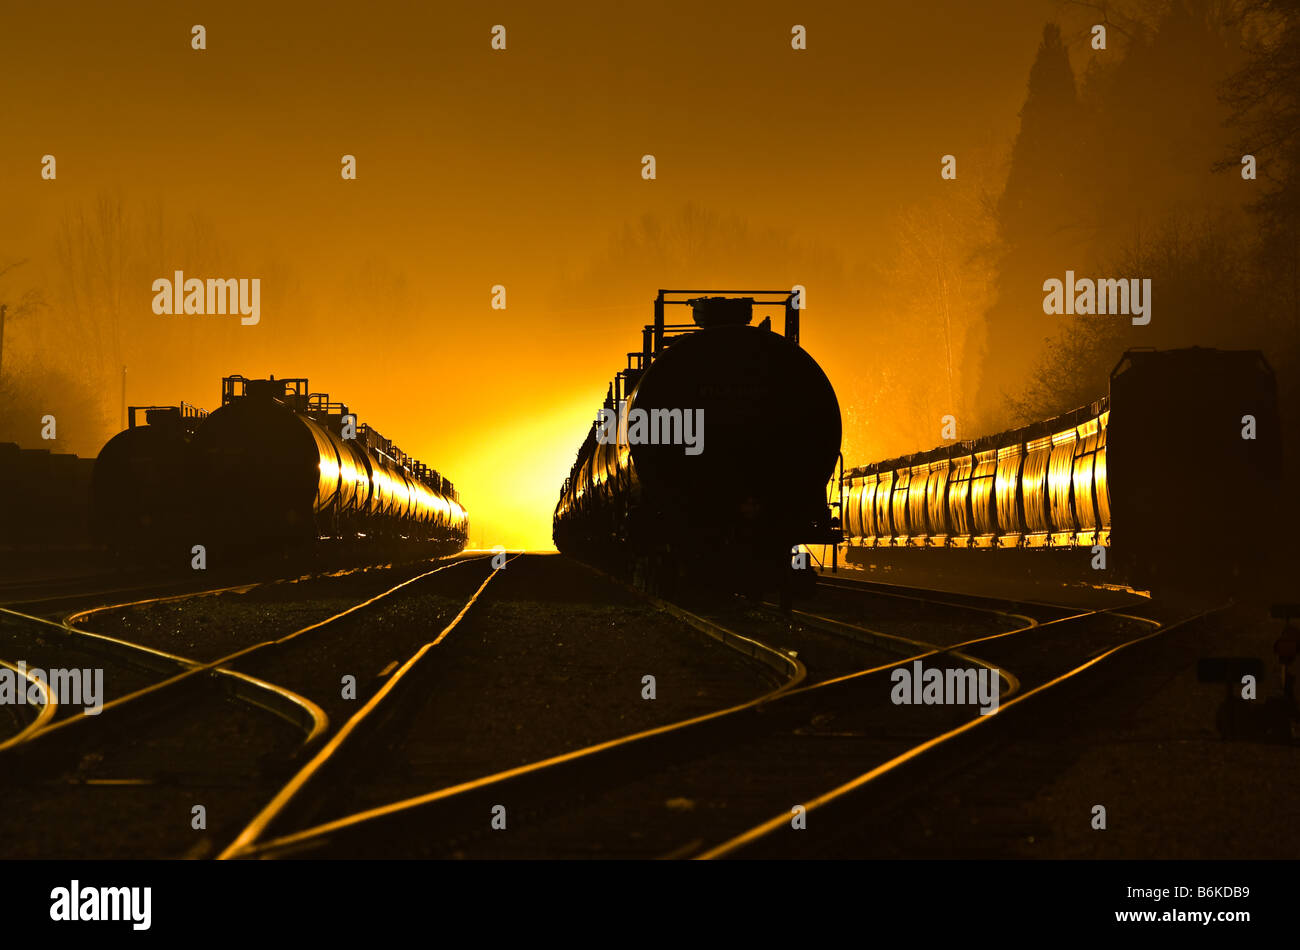 Voitures de train dans la nuit Brouillard Banque D'Images